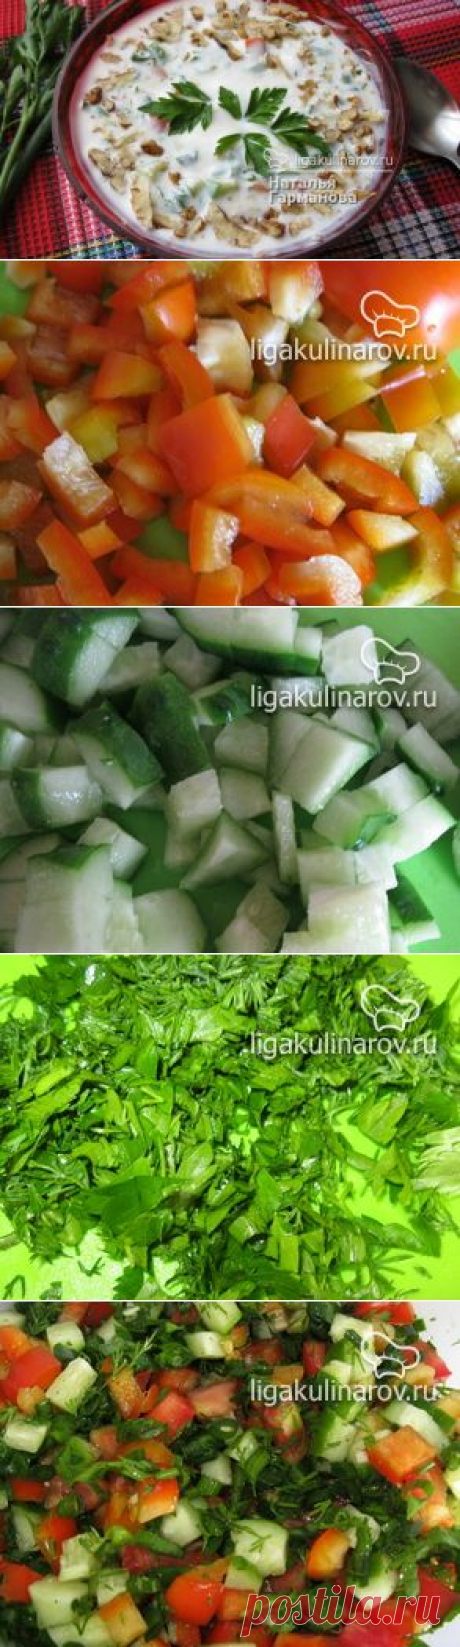 Пошаговый рецепт с фото овощной окрошки на кефире &quot;Южной&quot; от Лиги Кулинаров.